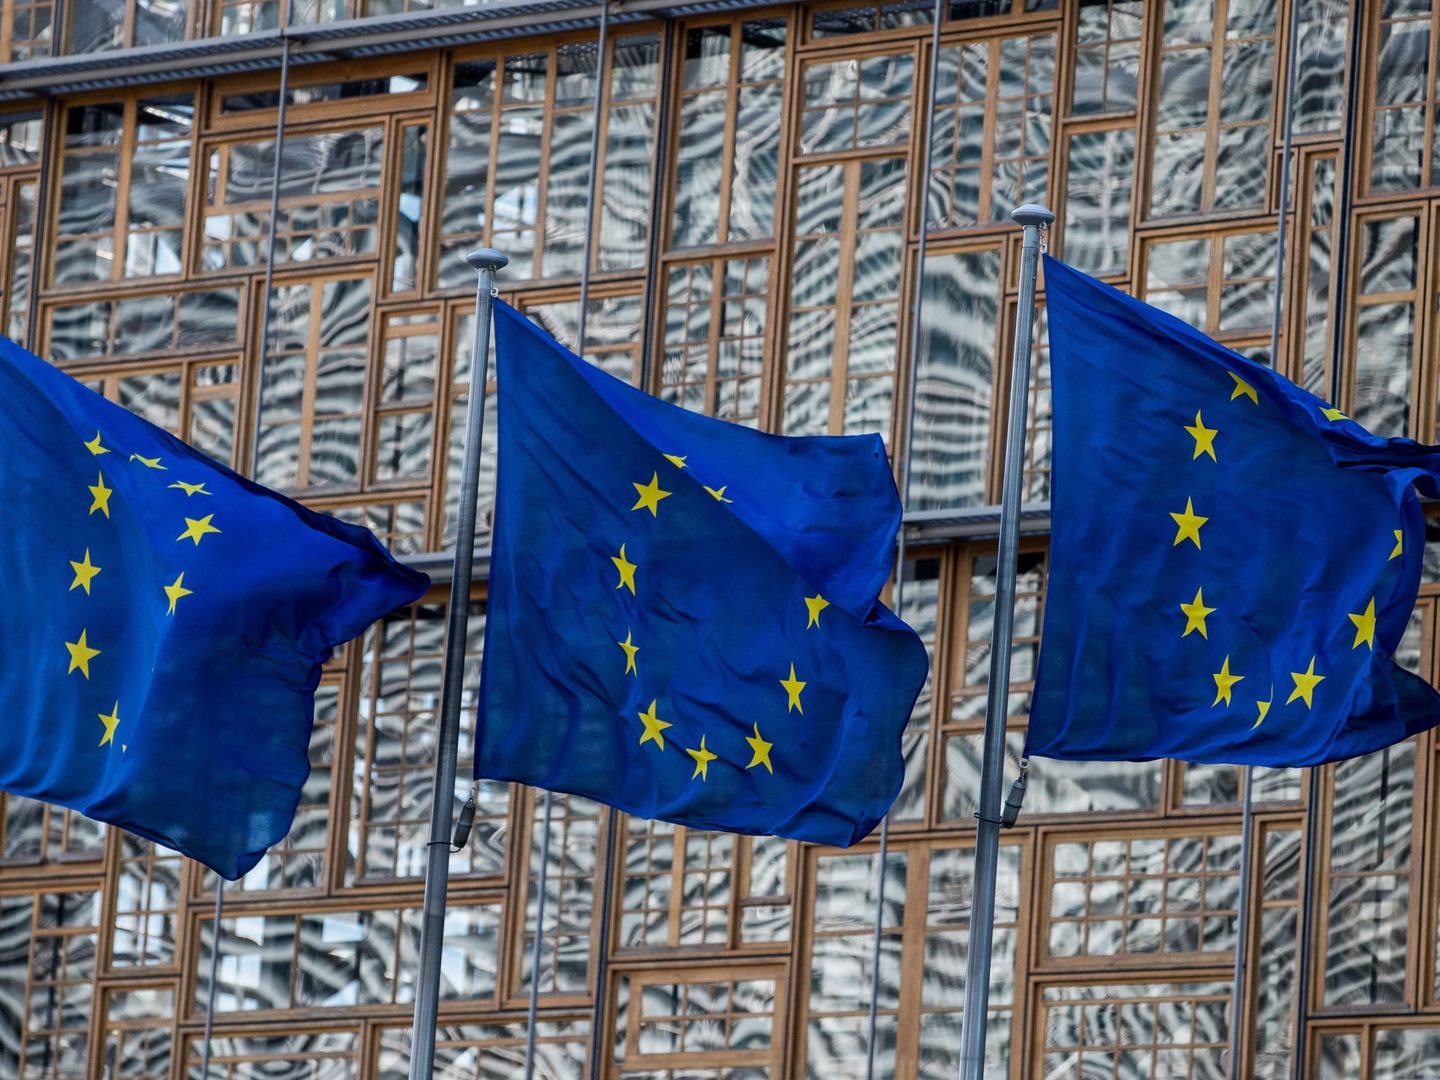 Banderas frente al Consejo Europeo. (EFE)